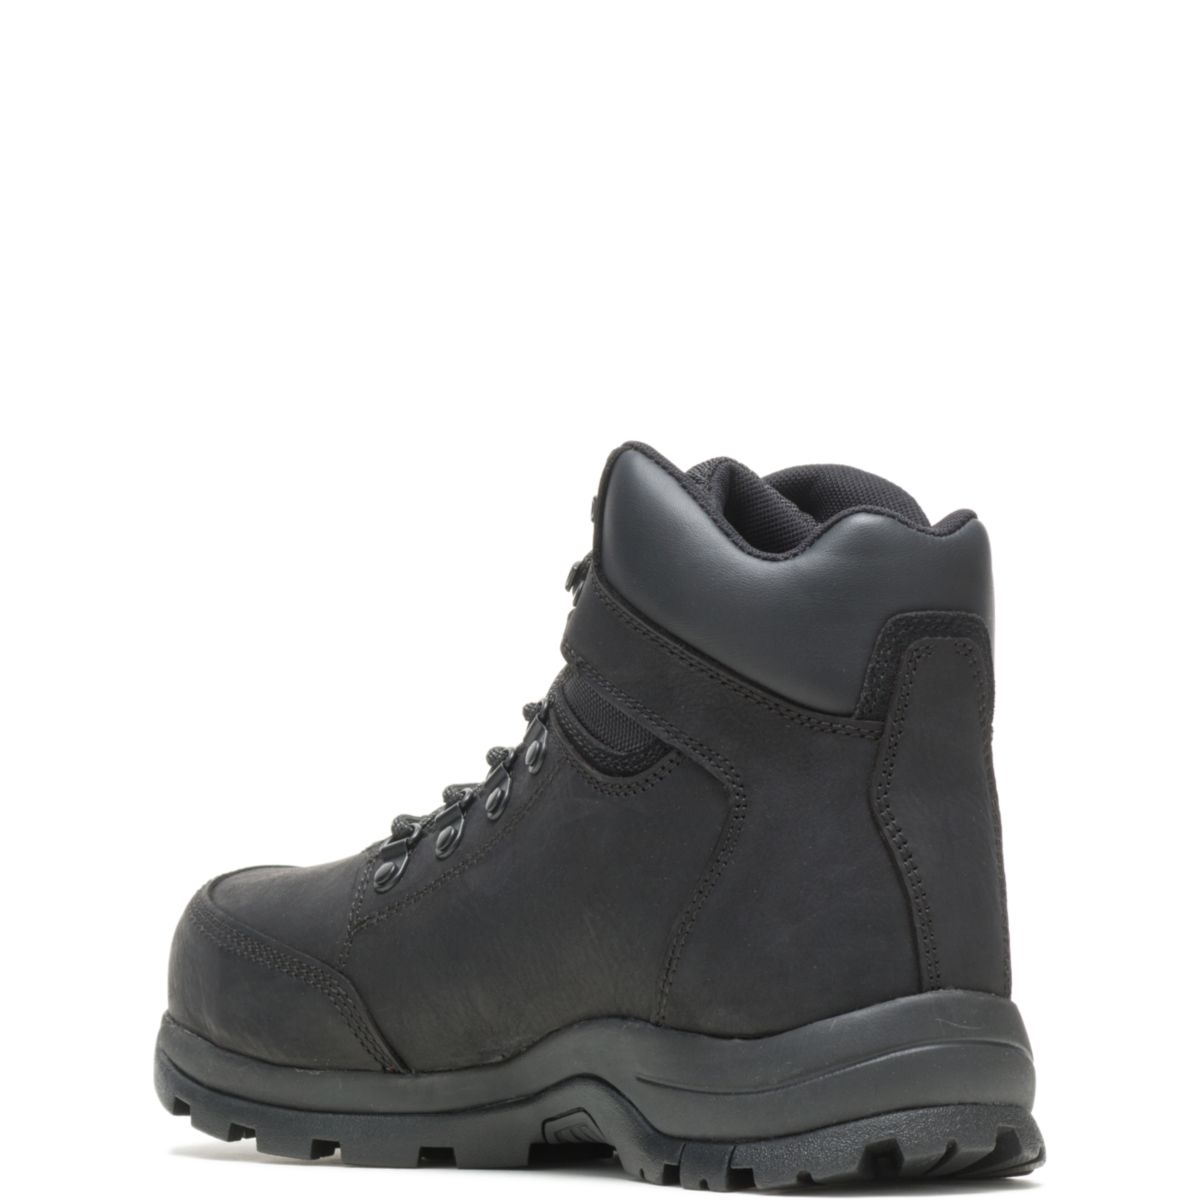 WOLVERINE Men's Grayson Steel Toe Waterproof Work Boot Black - W211042 BLACK - BLACK, 8.5 X-Wide